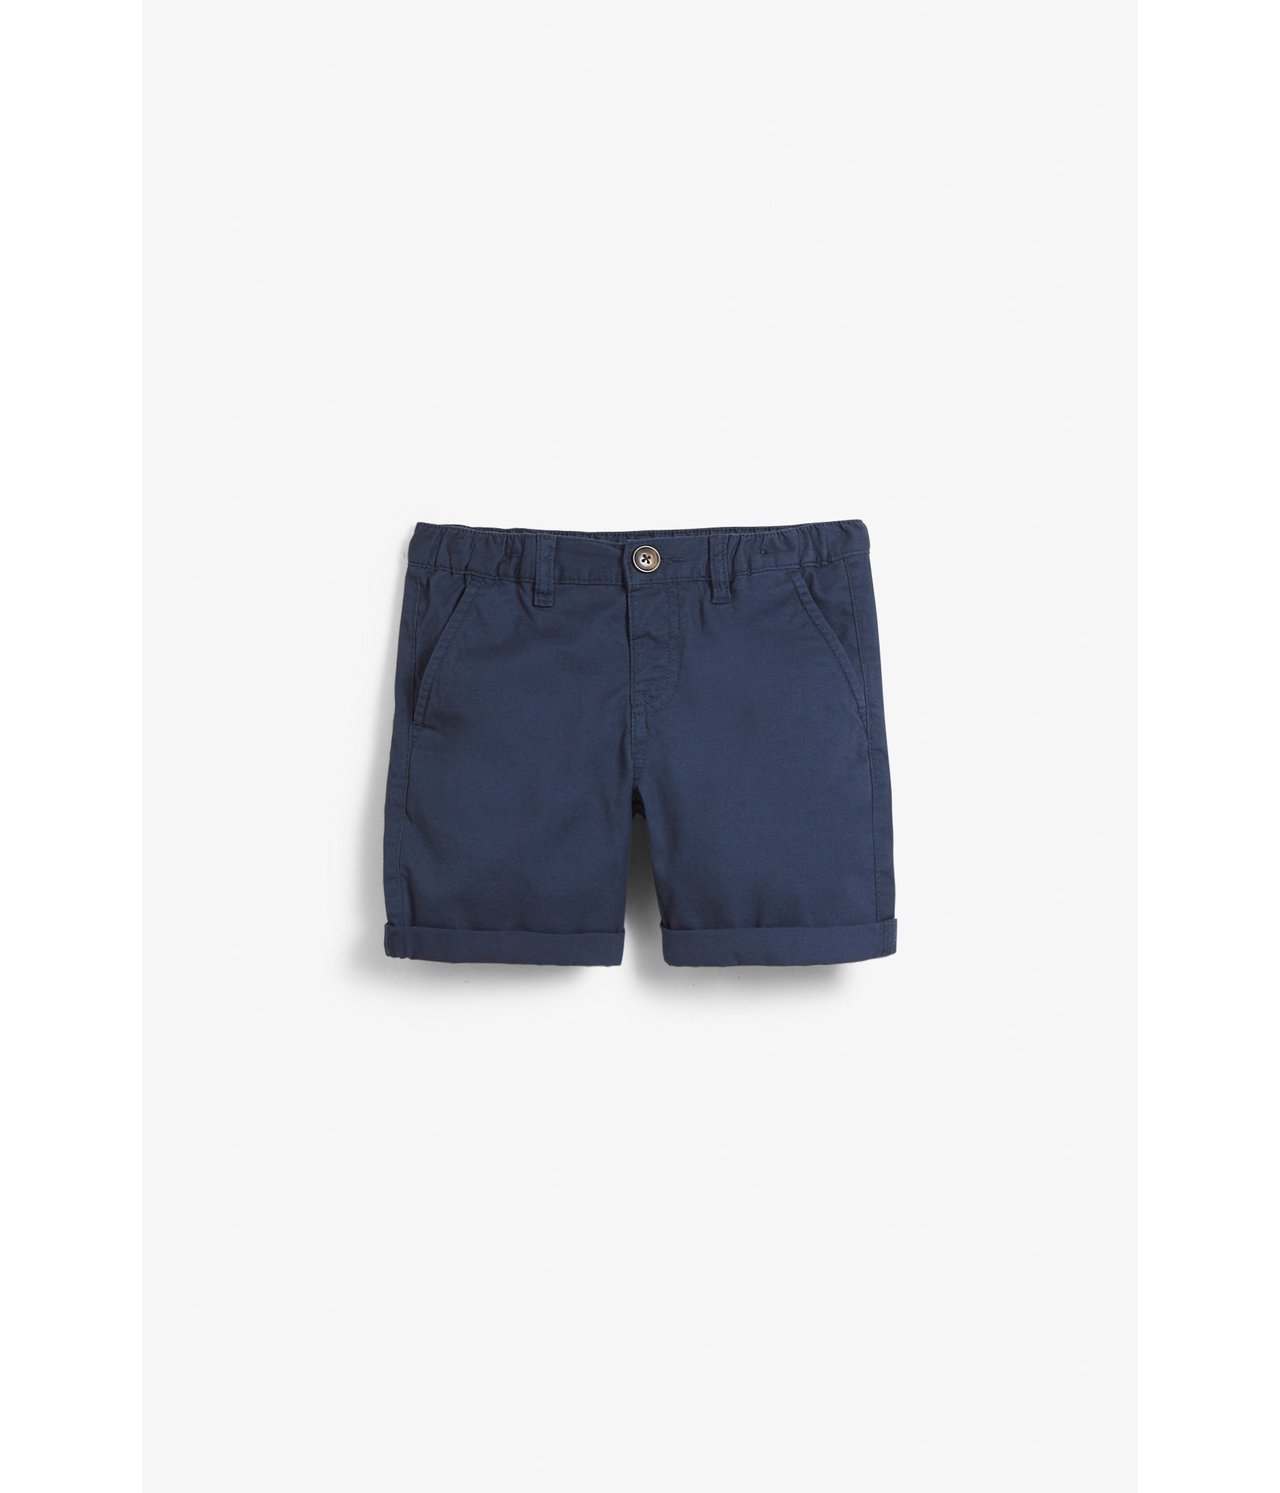 Vevd shorts Mørkeblå - null - 1